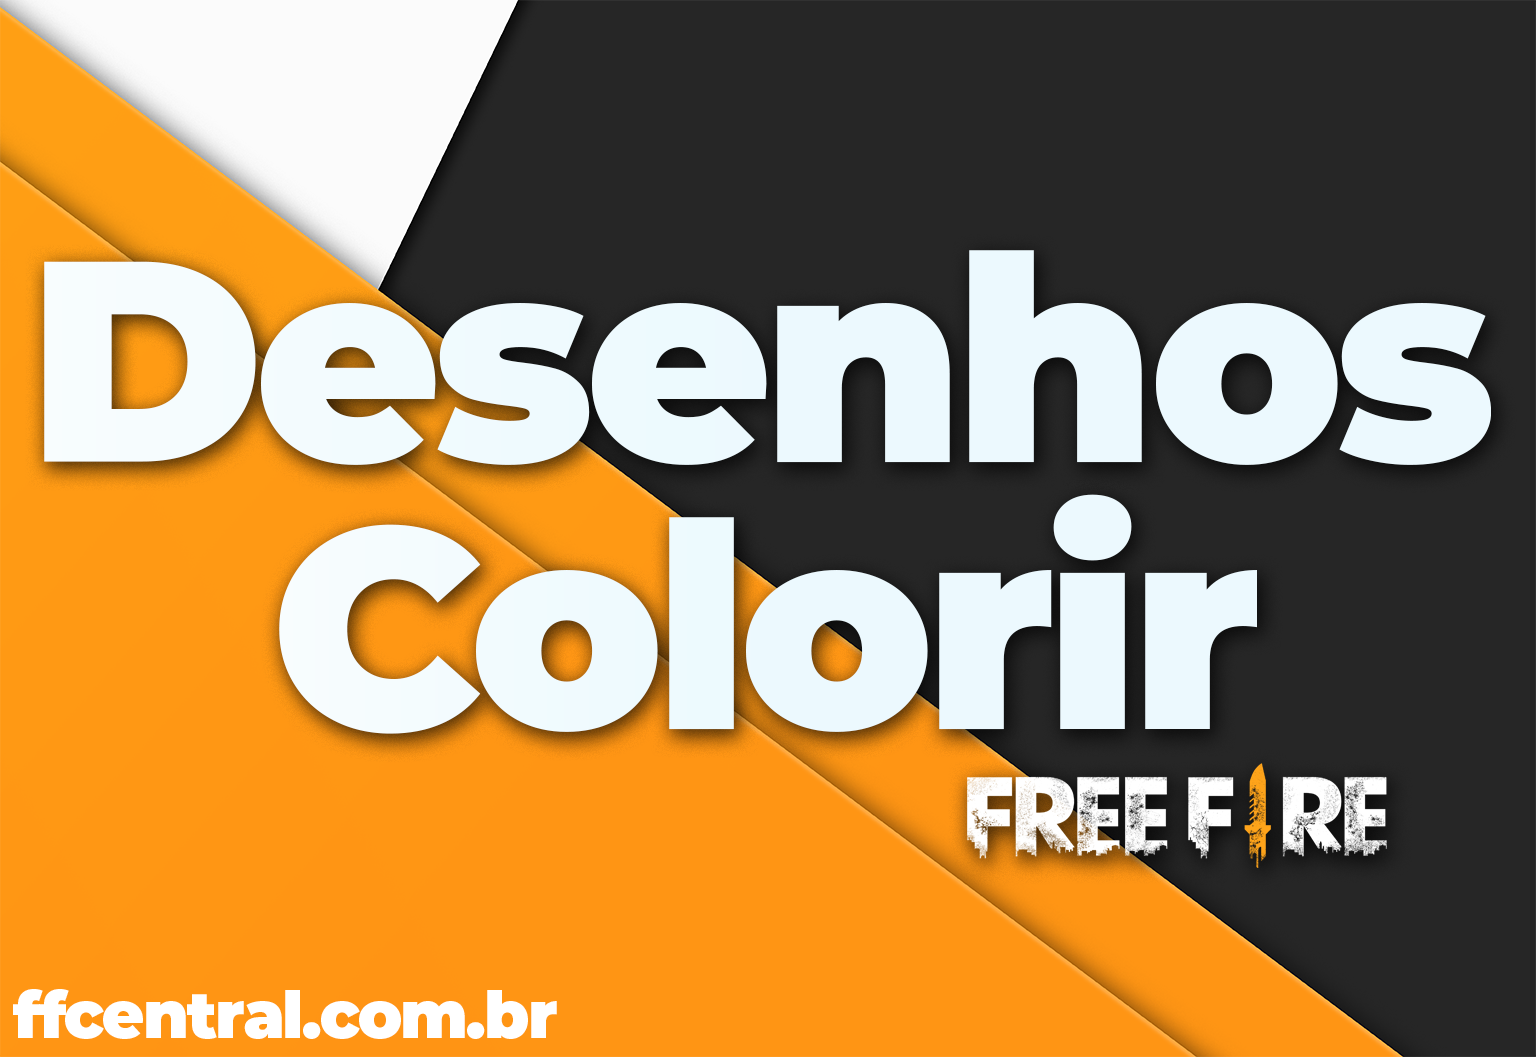 Garena Free Desenho Do Free Fire Para Colorir E Imprimir